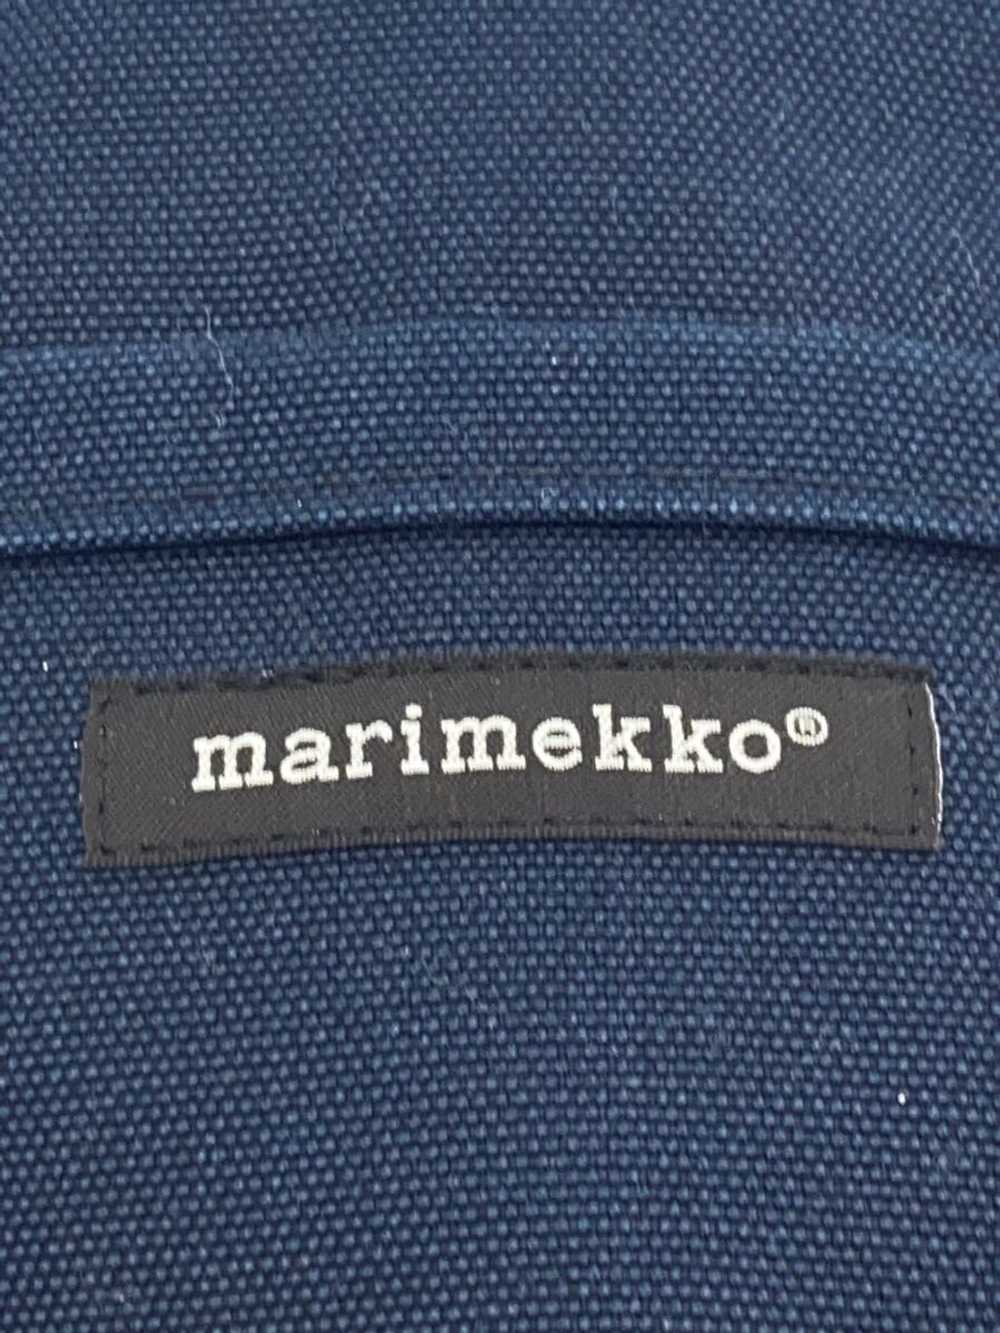 Marimekko Mini Tote Bag/Canvas/Nvy/Plain Bag - image 5